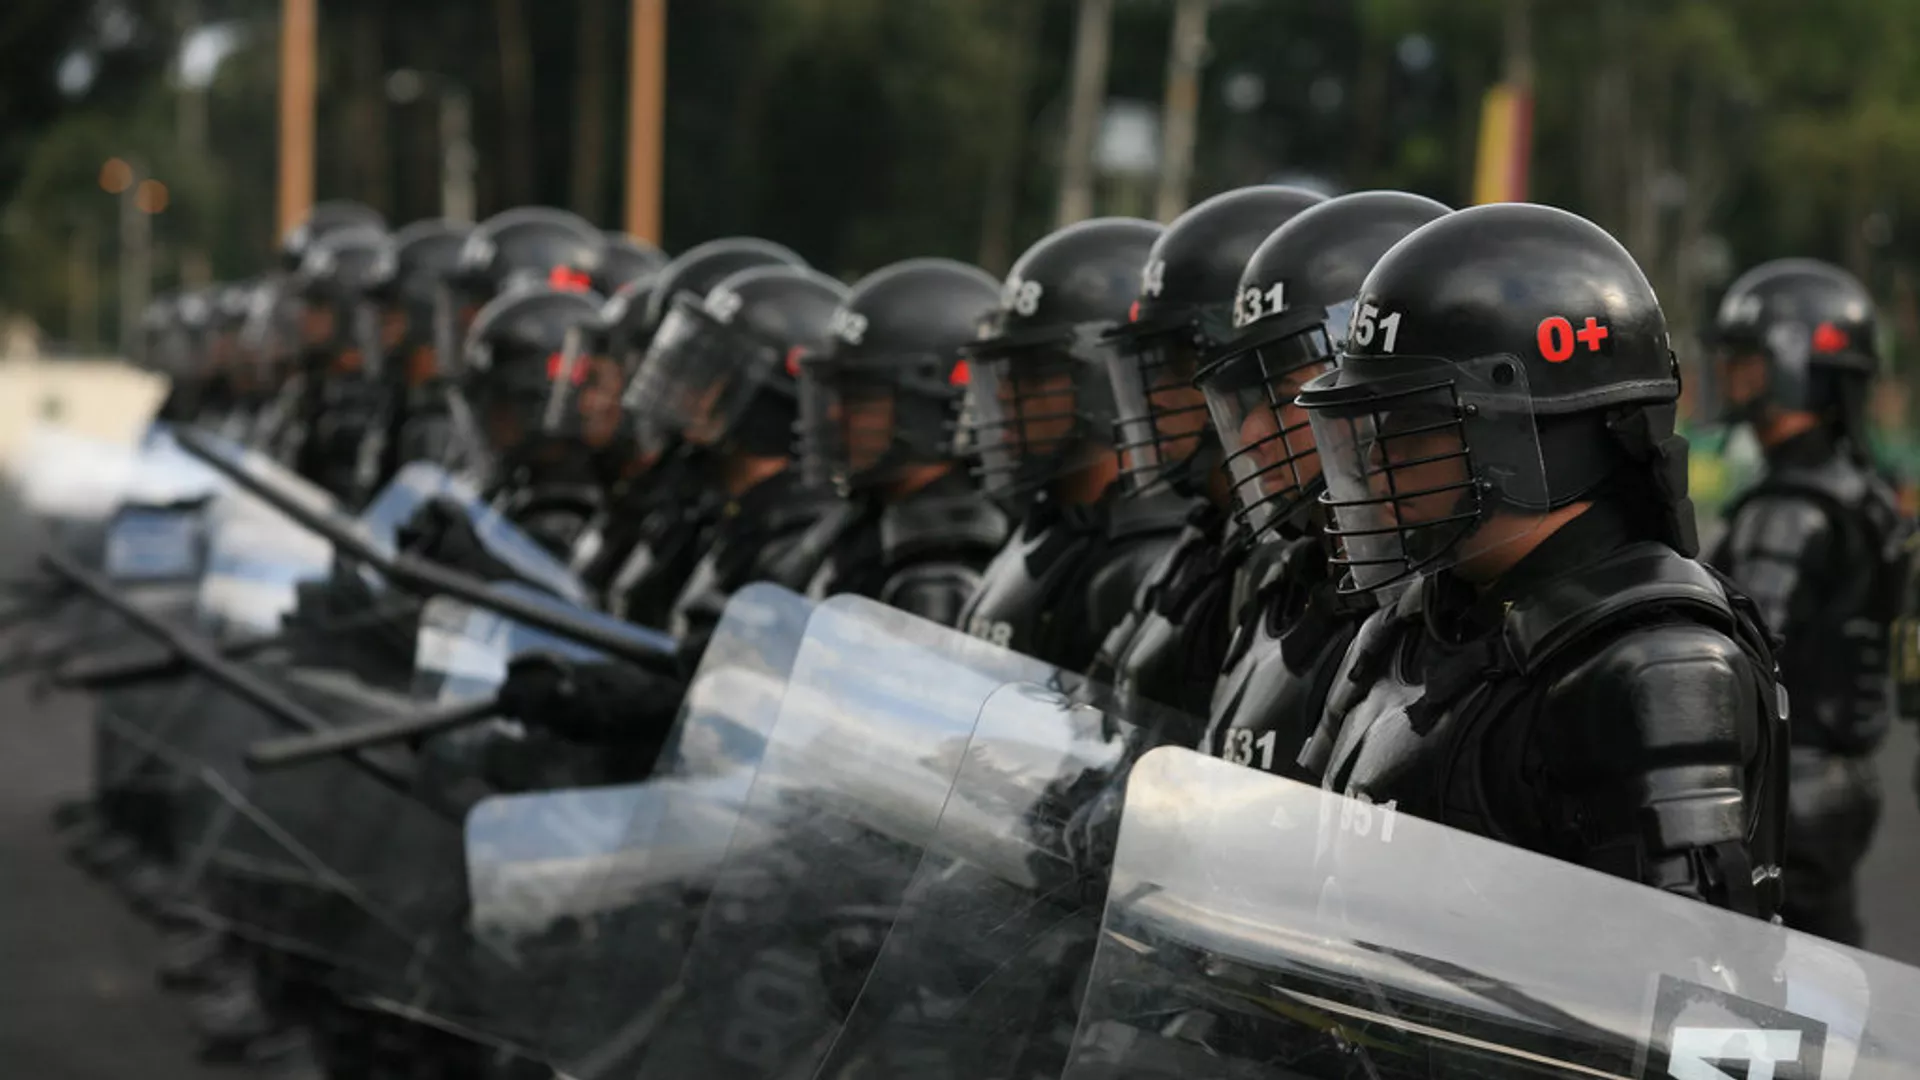  El jefe de la Policía colombiana asegura haber practicado exorcismos para enfrentar a criminales